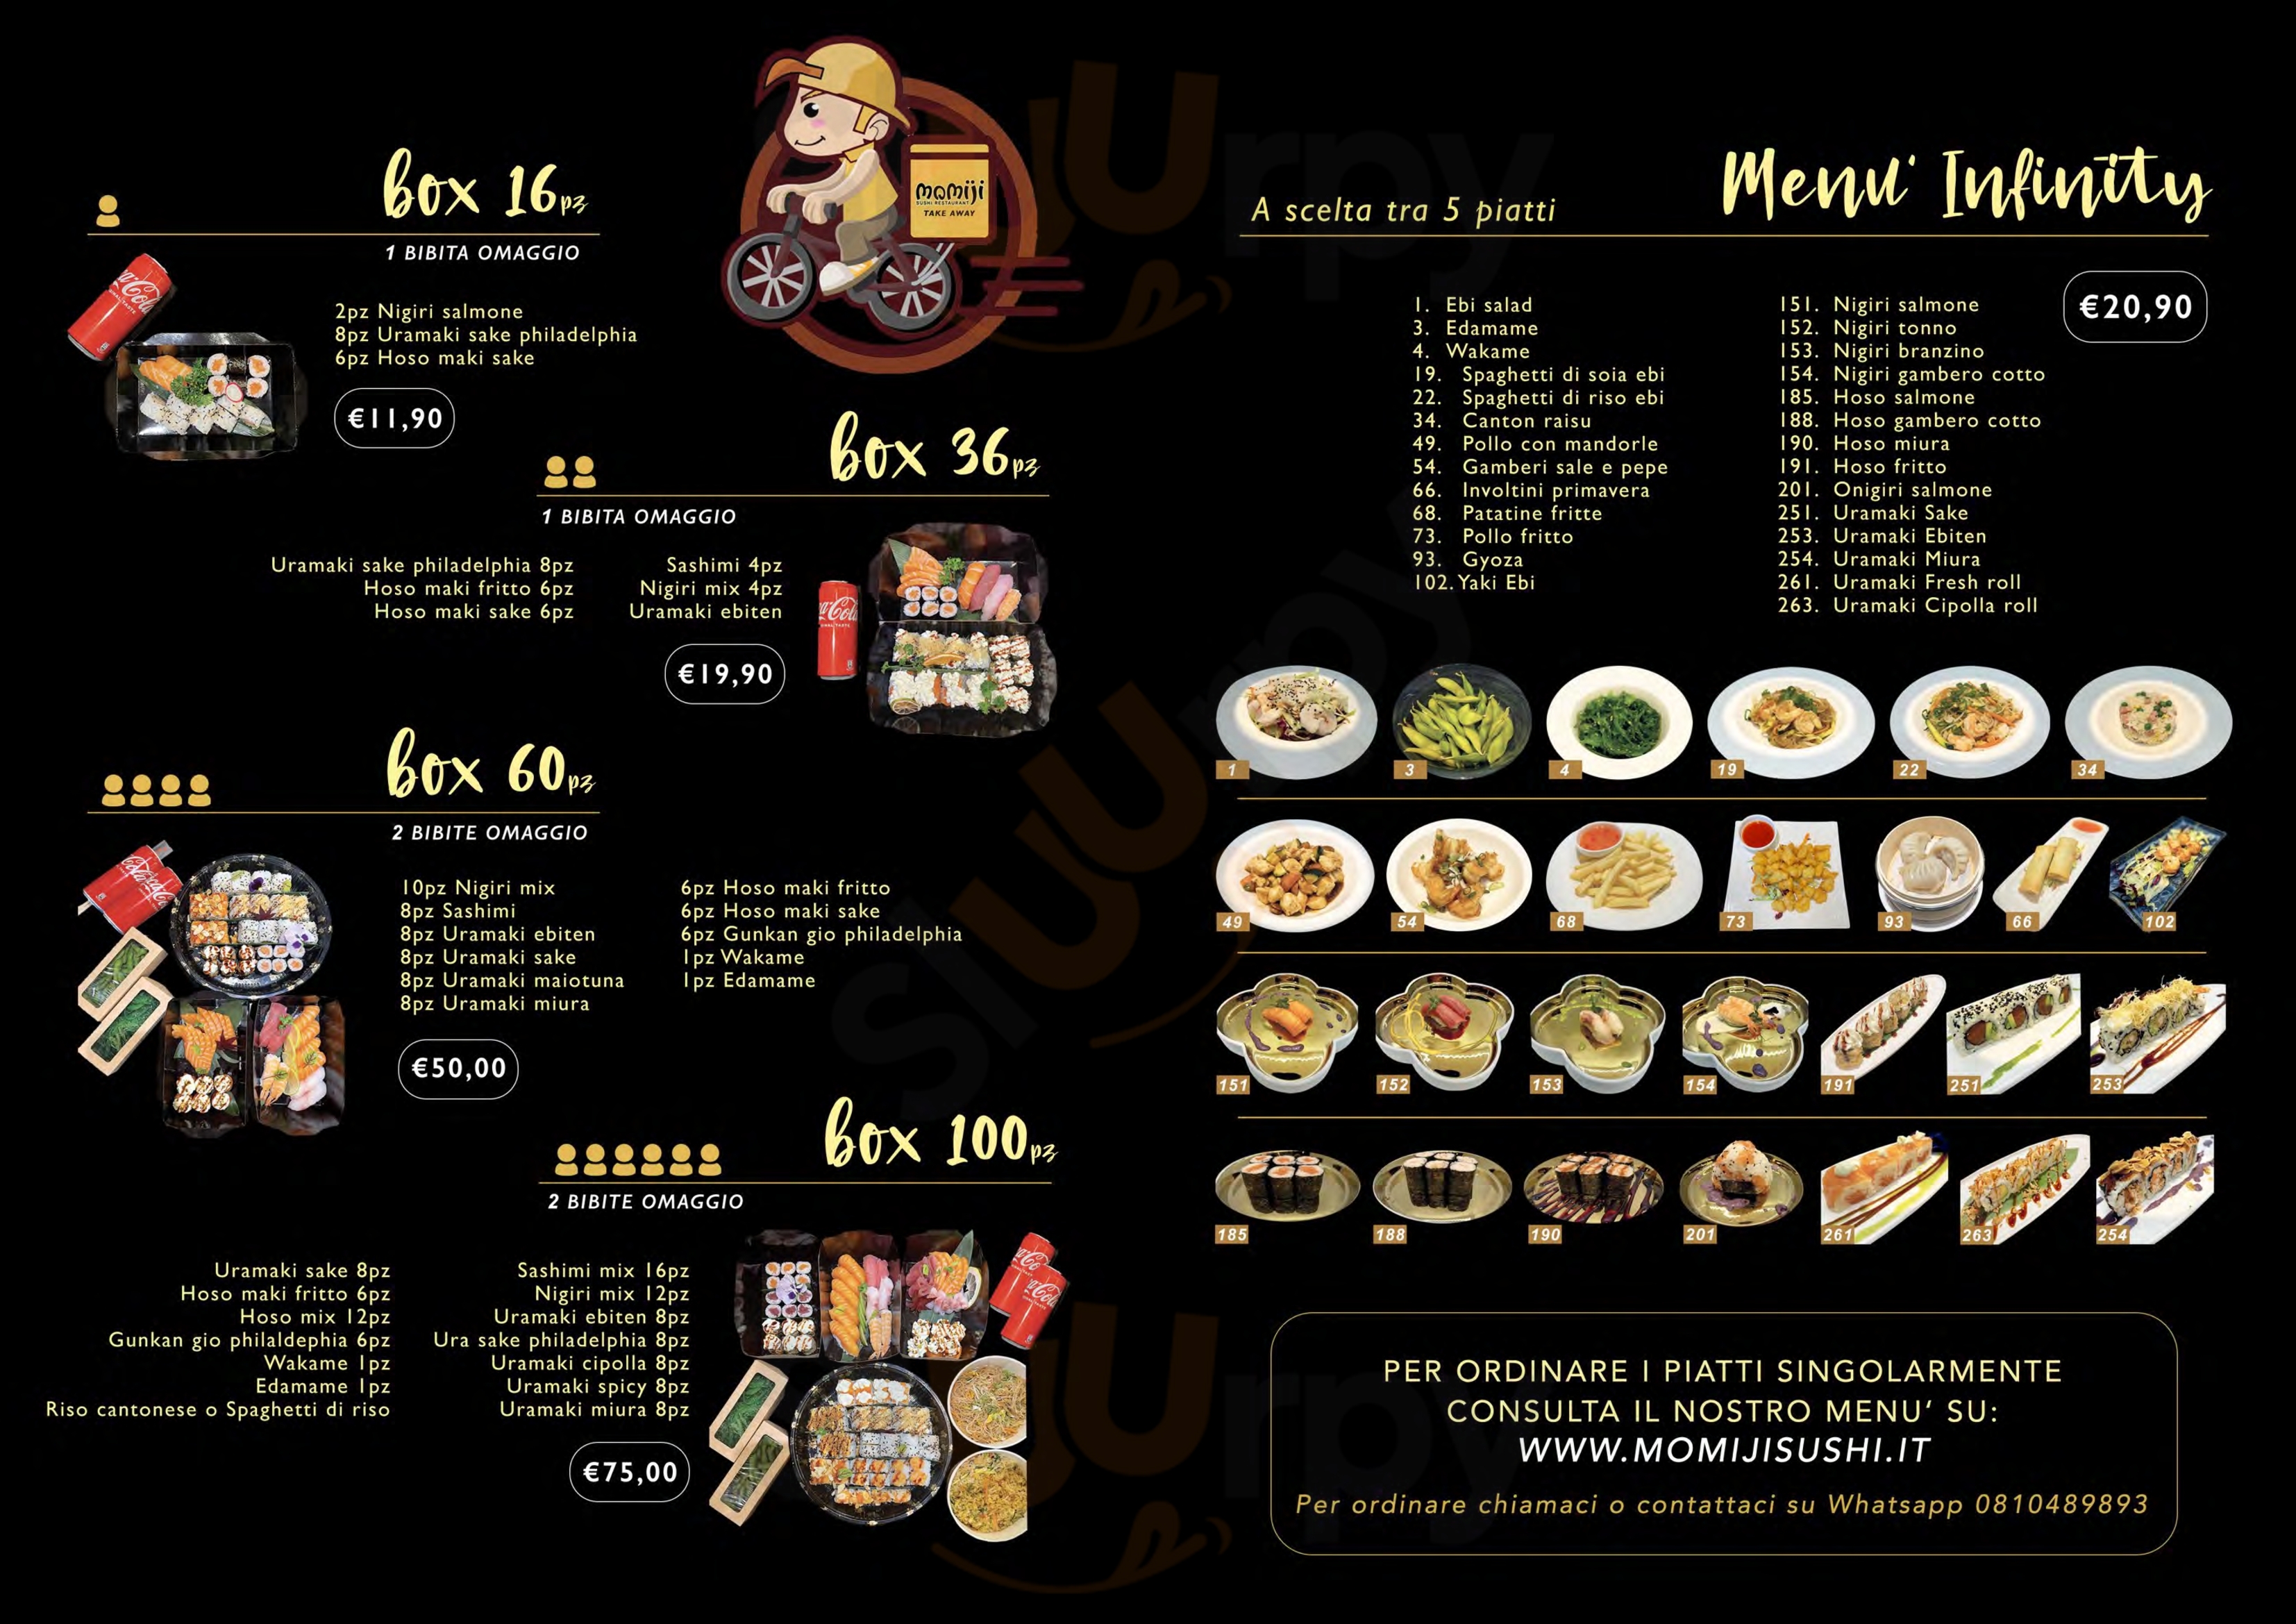 Momiji Sushi Restaurant Caivano menù 1 pagina